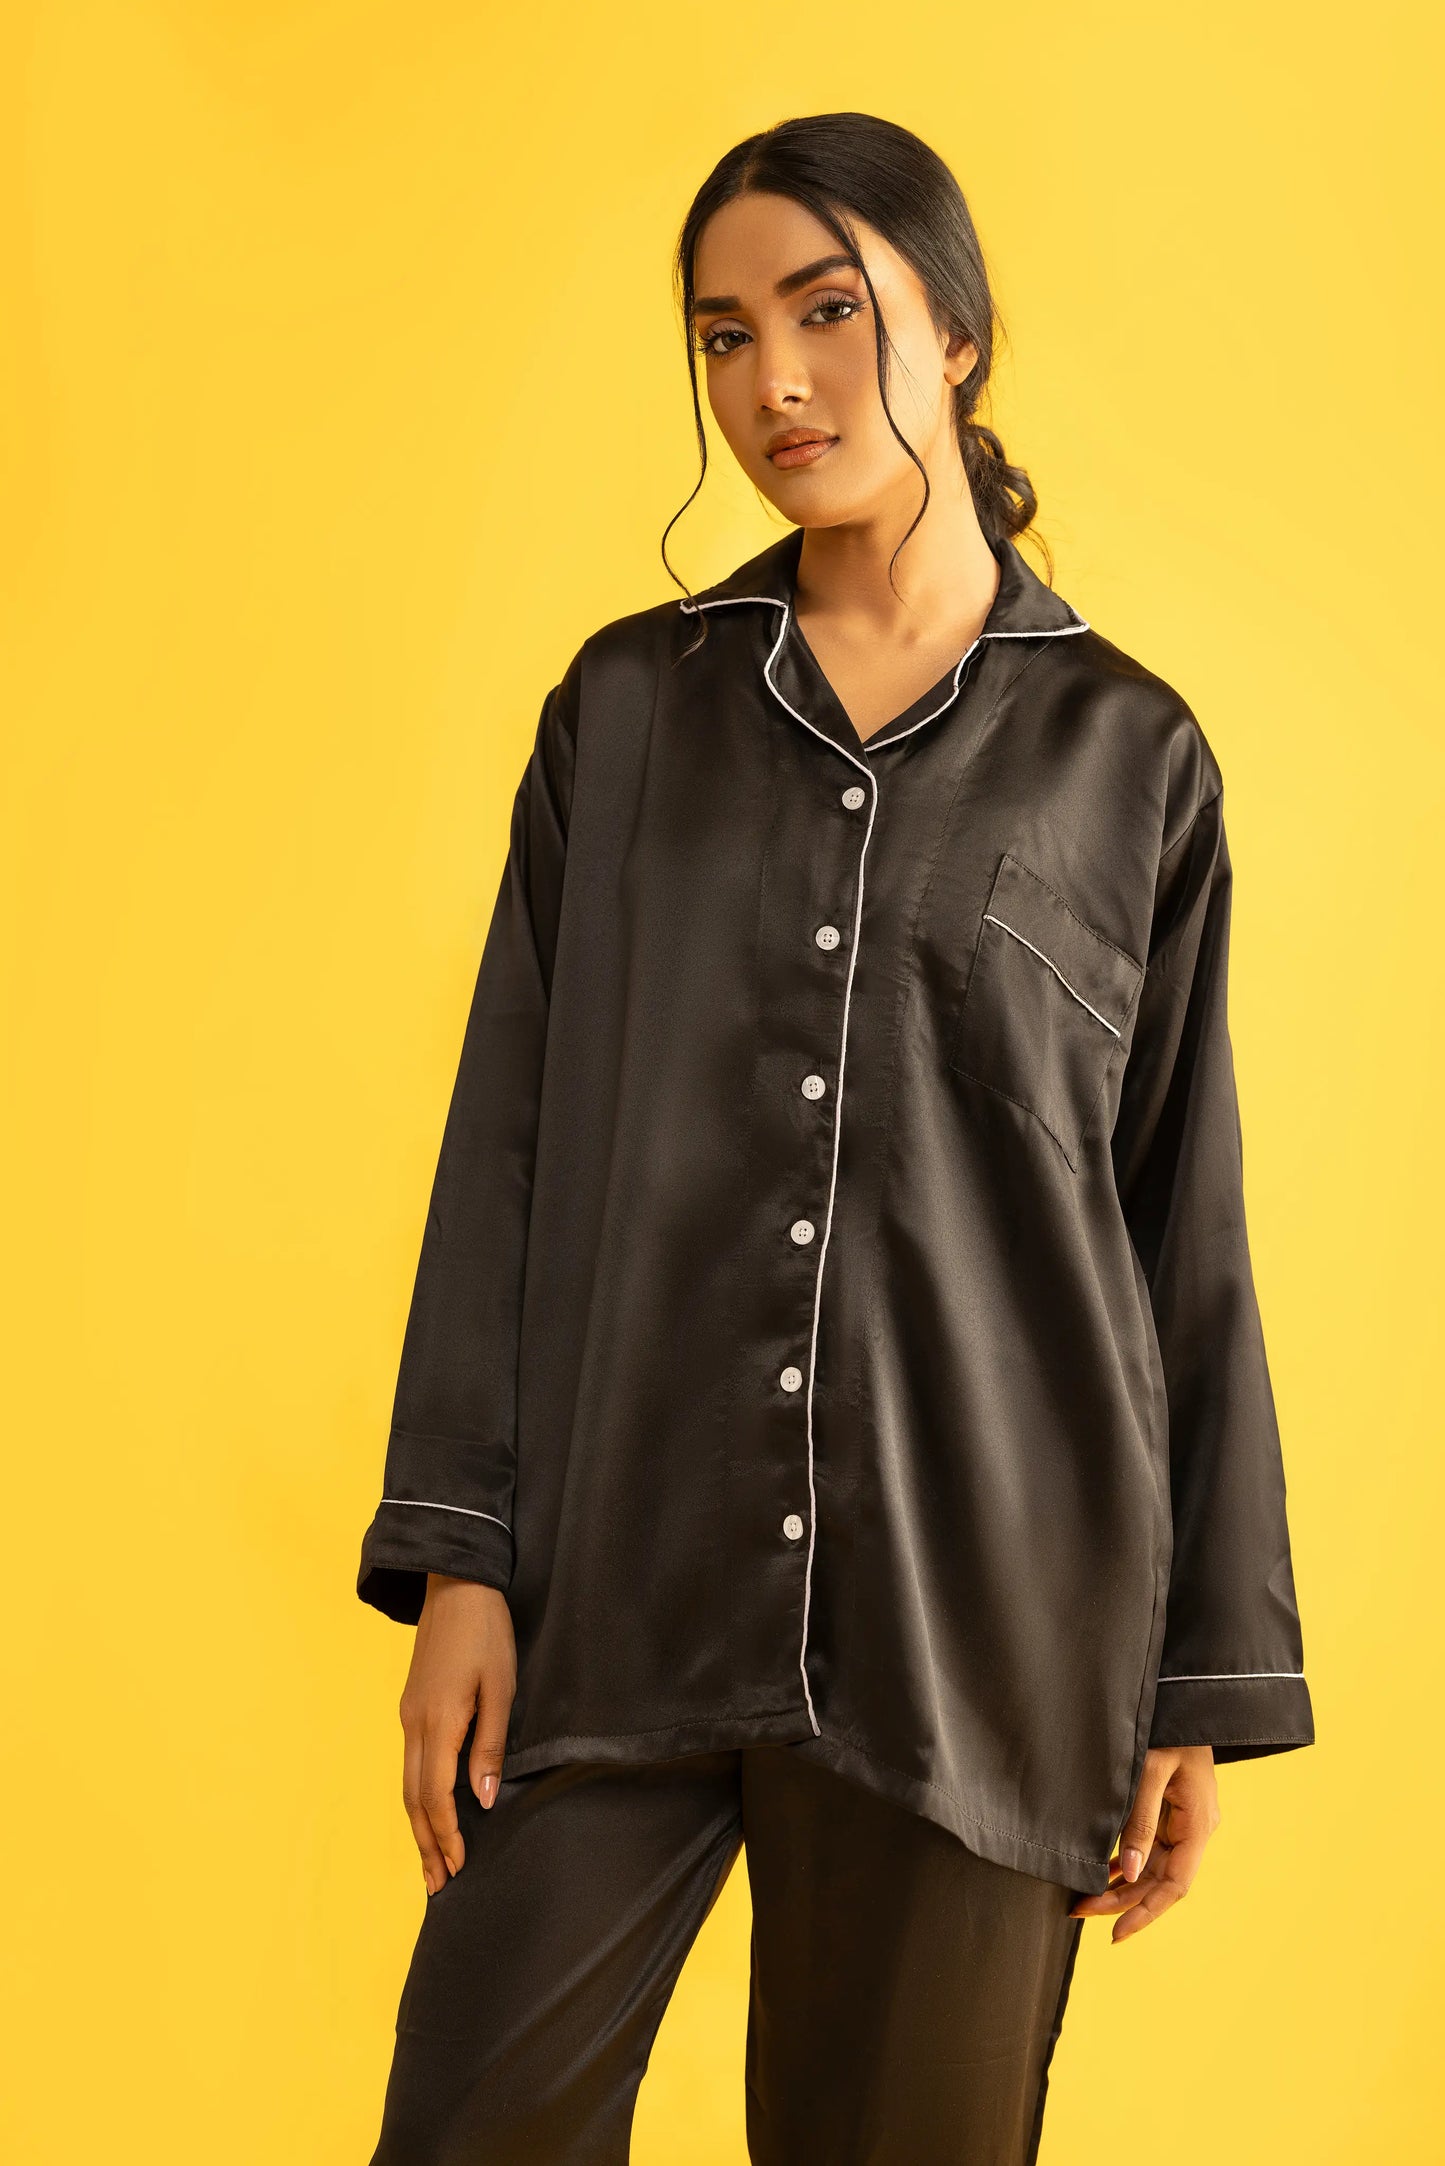 Black Silk Satin Women‘s Pajamas Set Notched Collar Top & Wide Leg Long Pants 2 Pieces  Loungewear